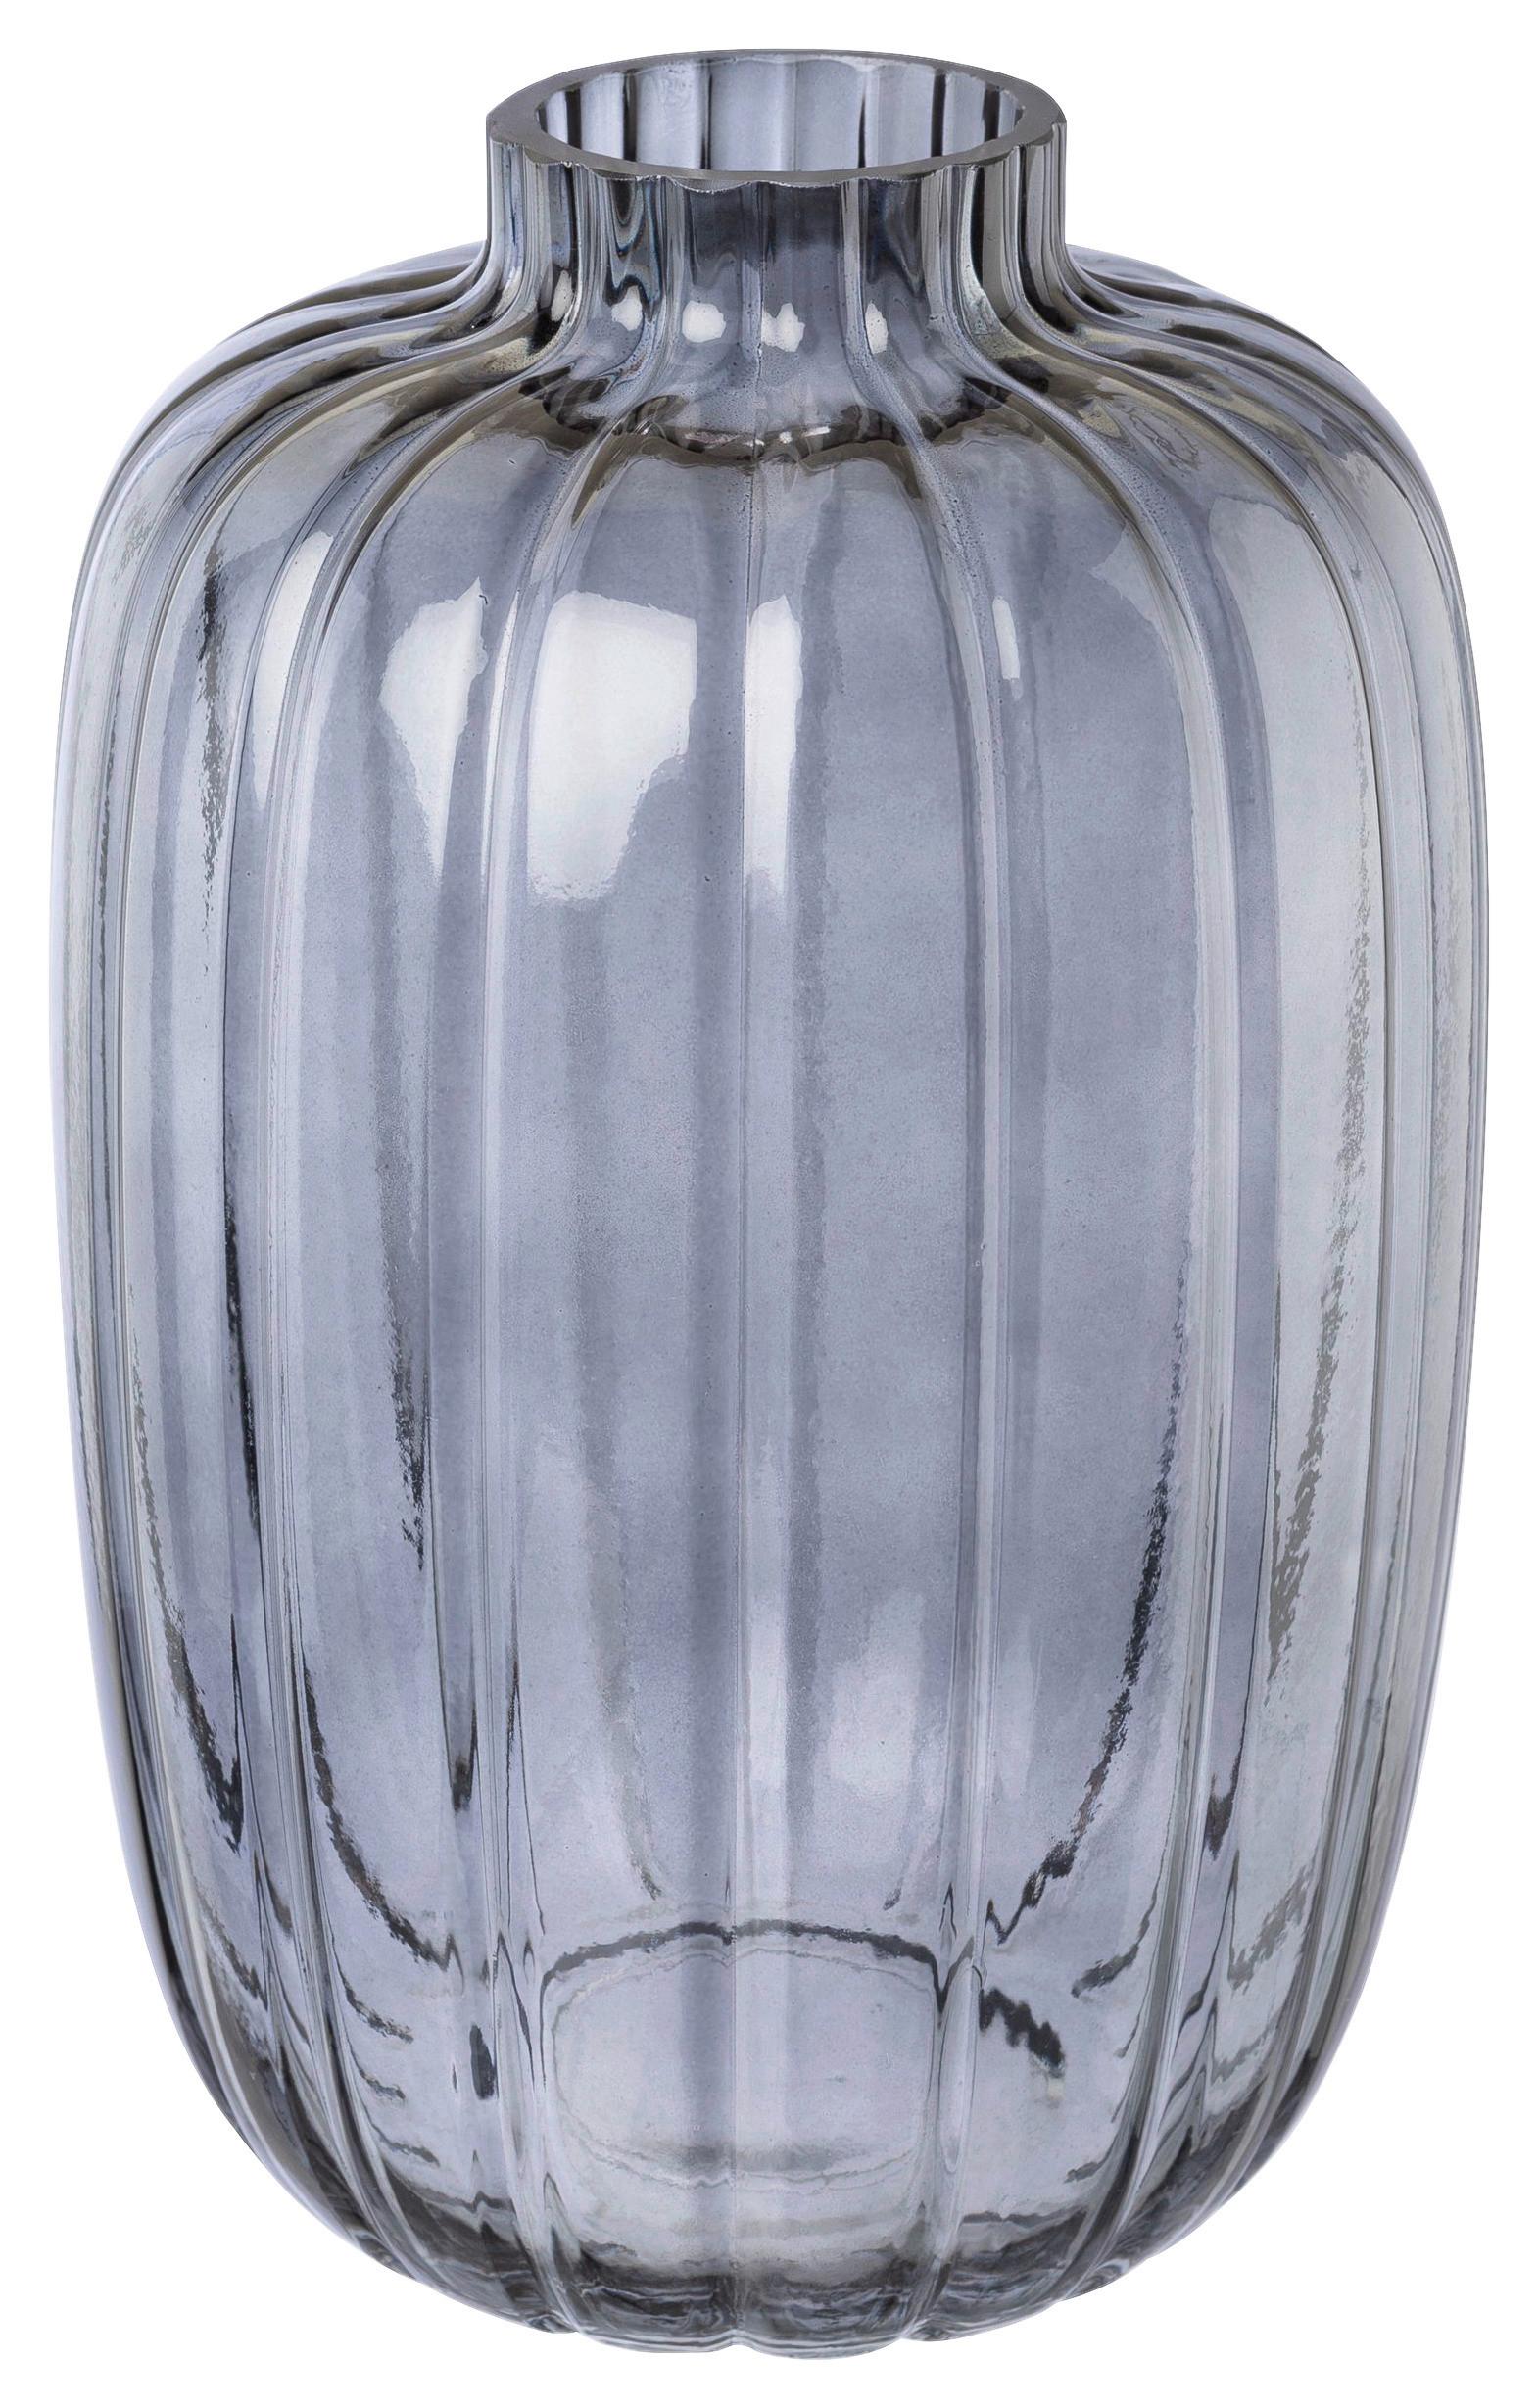 Vaza Schliff I -Paz- - modra, Moderno, steklo (16,5/25,5cm) - Premium Living